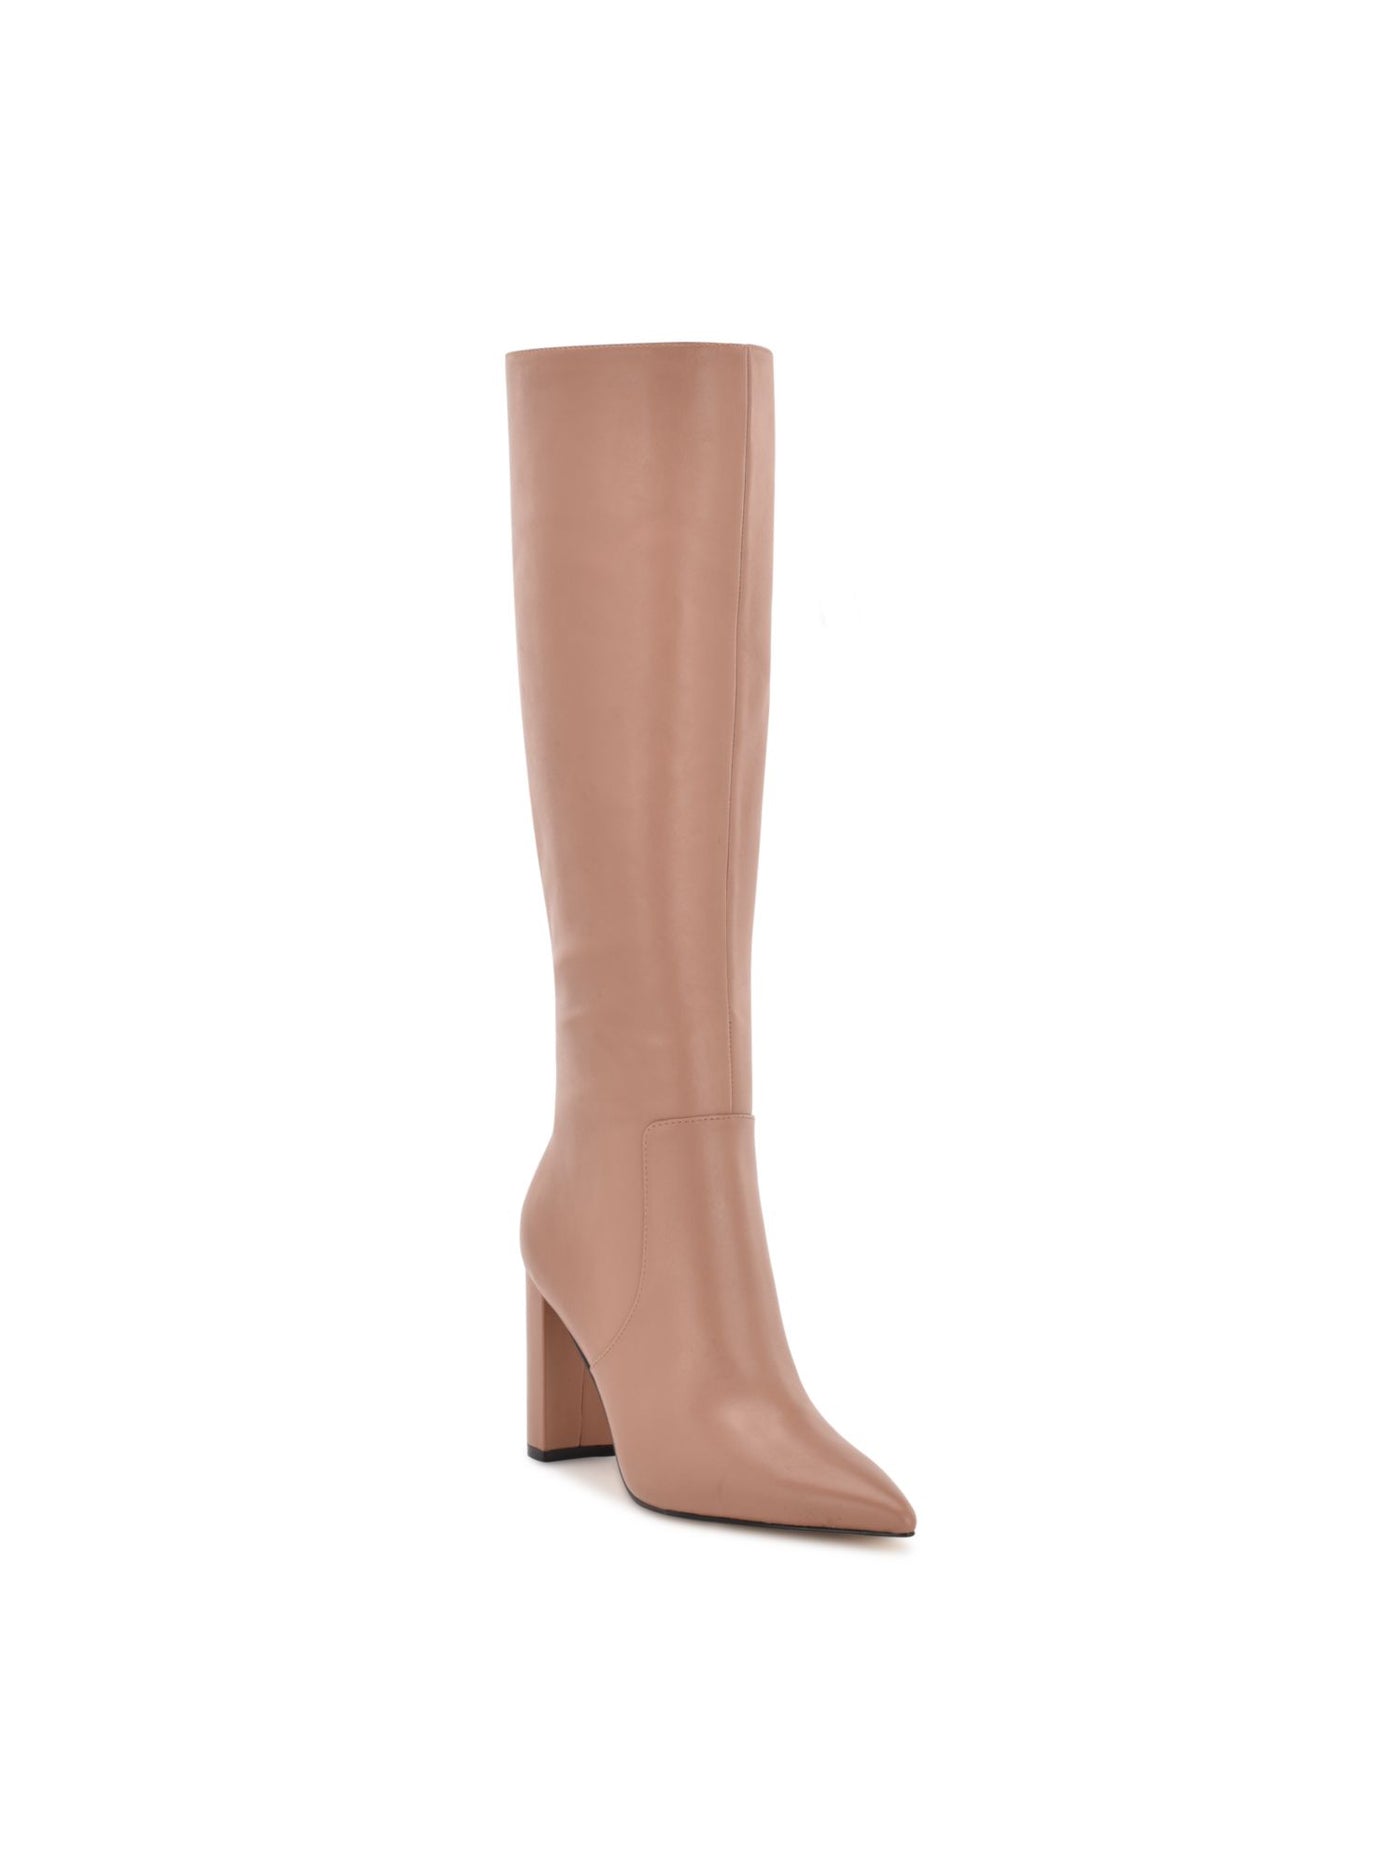 NINE WEST Womens Beige Comfort Danee Pointy Toe Block Heel Zip-Up Leather Boots 10 M